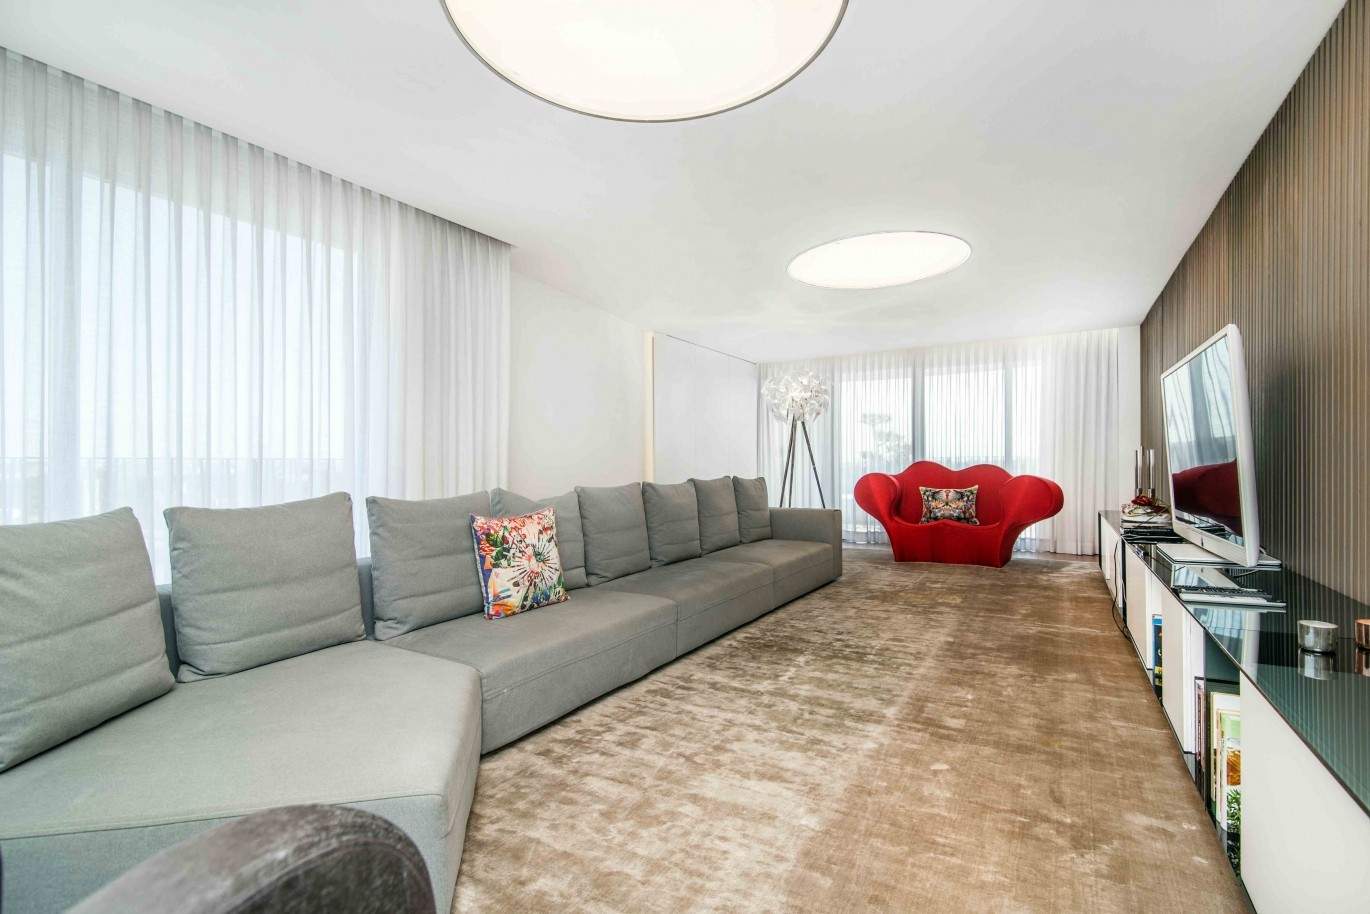 Verkauf Maisonette-Wohnung von Luxus mit Terrasse, Maia,Porto,Portugal_67819